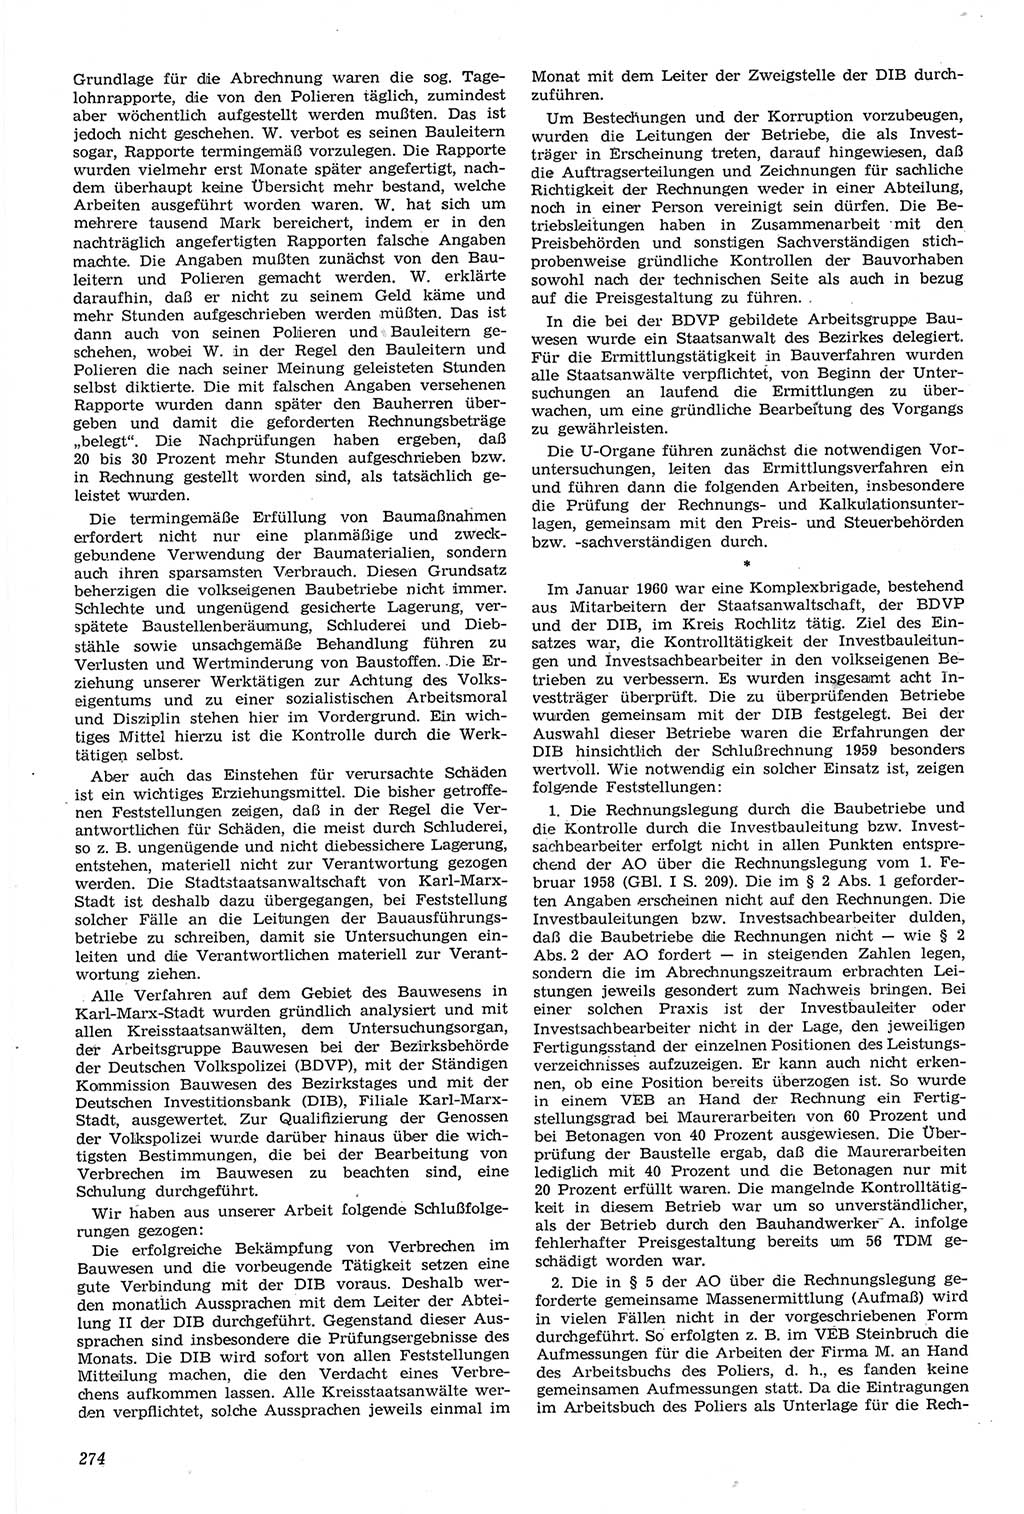 Neue Justiz (NJ), Zeitschrift für Recht und Rechtswissenschaft [Deutsche Demokratische Republik (DDR)], 14. Jahrgang 1960, Seite 274 (NJ DDR 1960, S. 274)